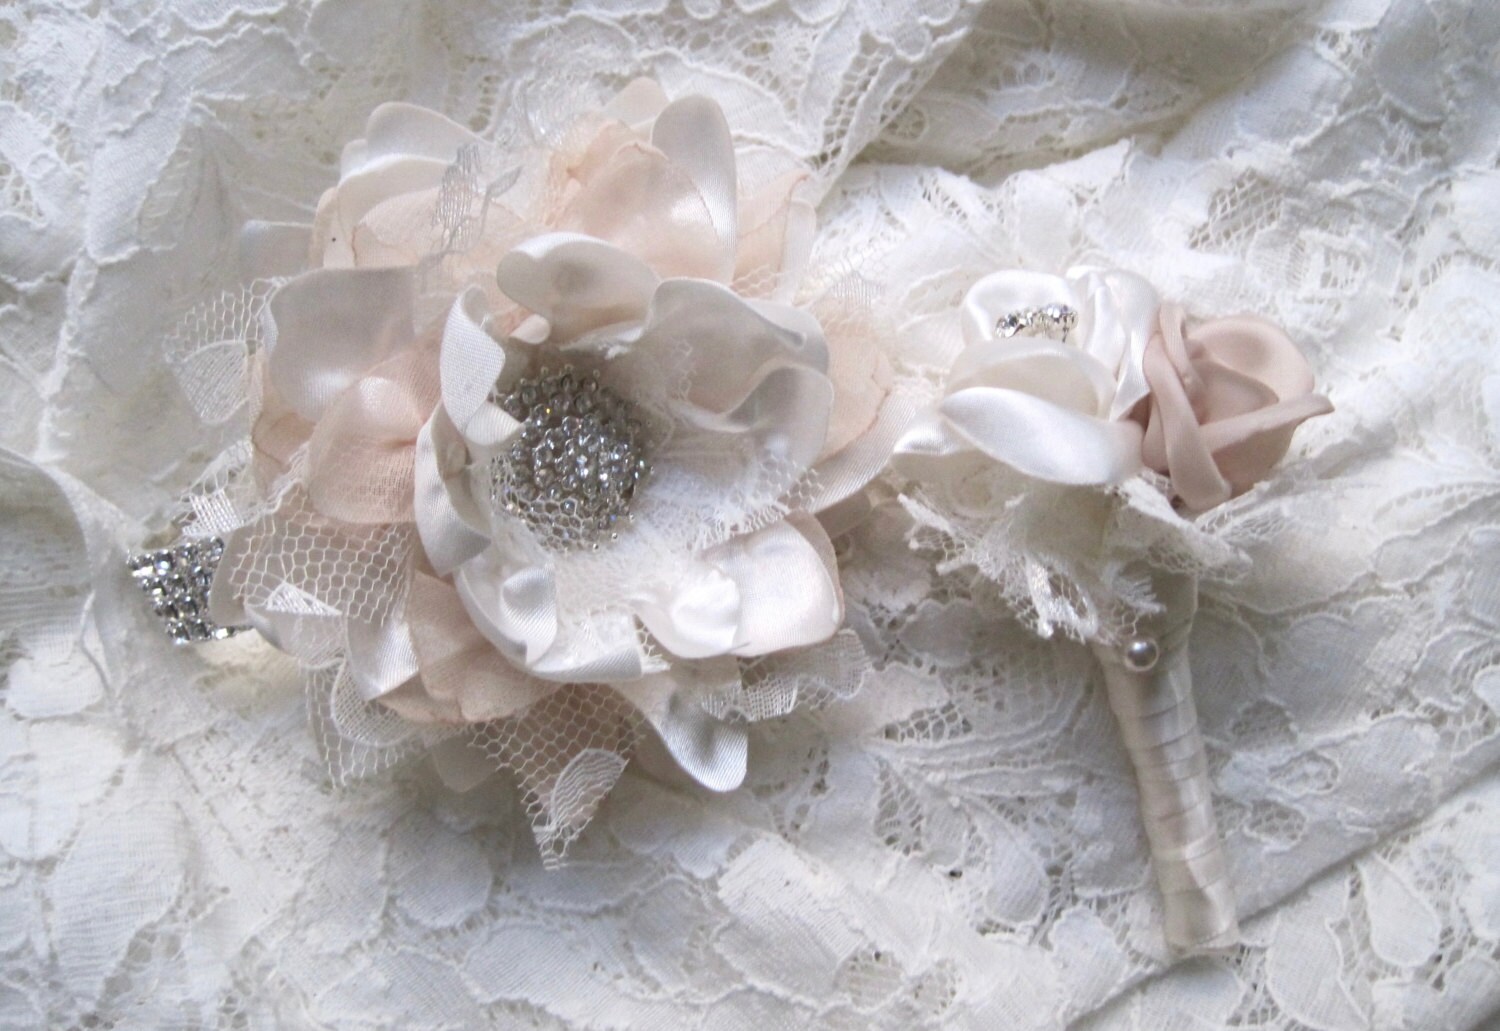 Rhinestone Wrist Corsage Bracelet Set Wedding Prom Homecoming | Etsy